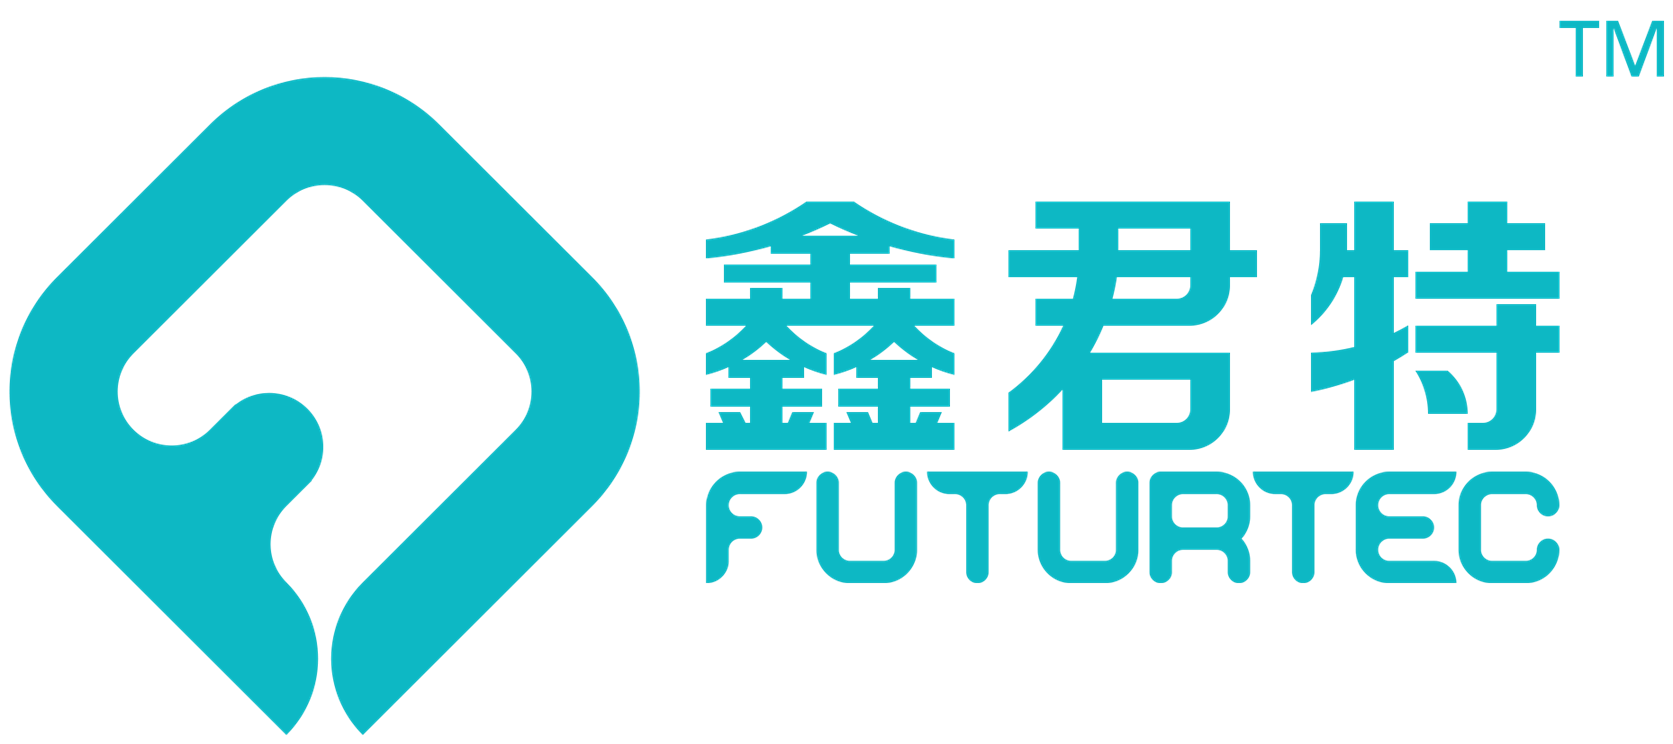 Vision Fund investment portfolio company Futurtec's logo